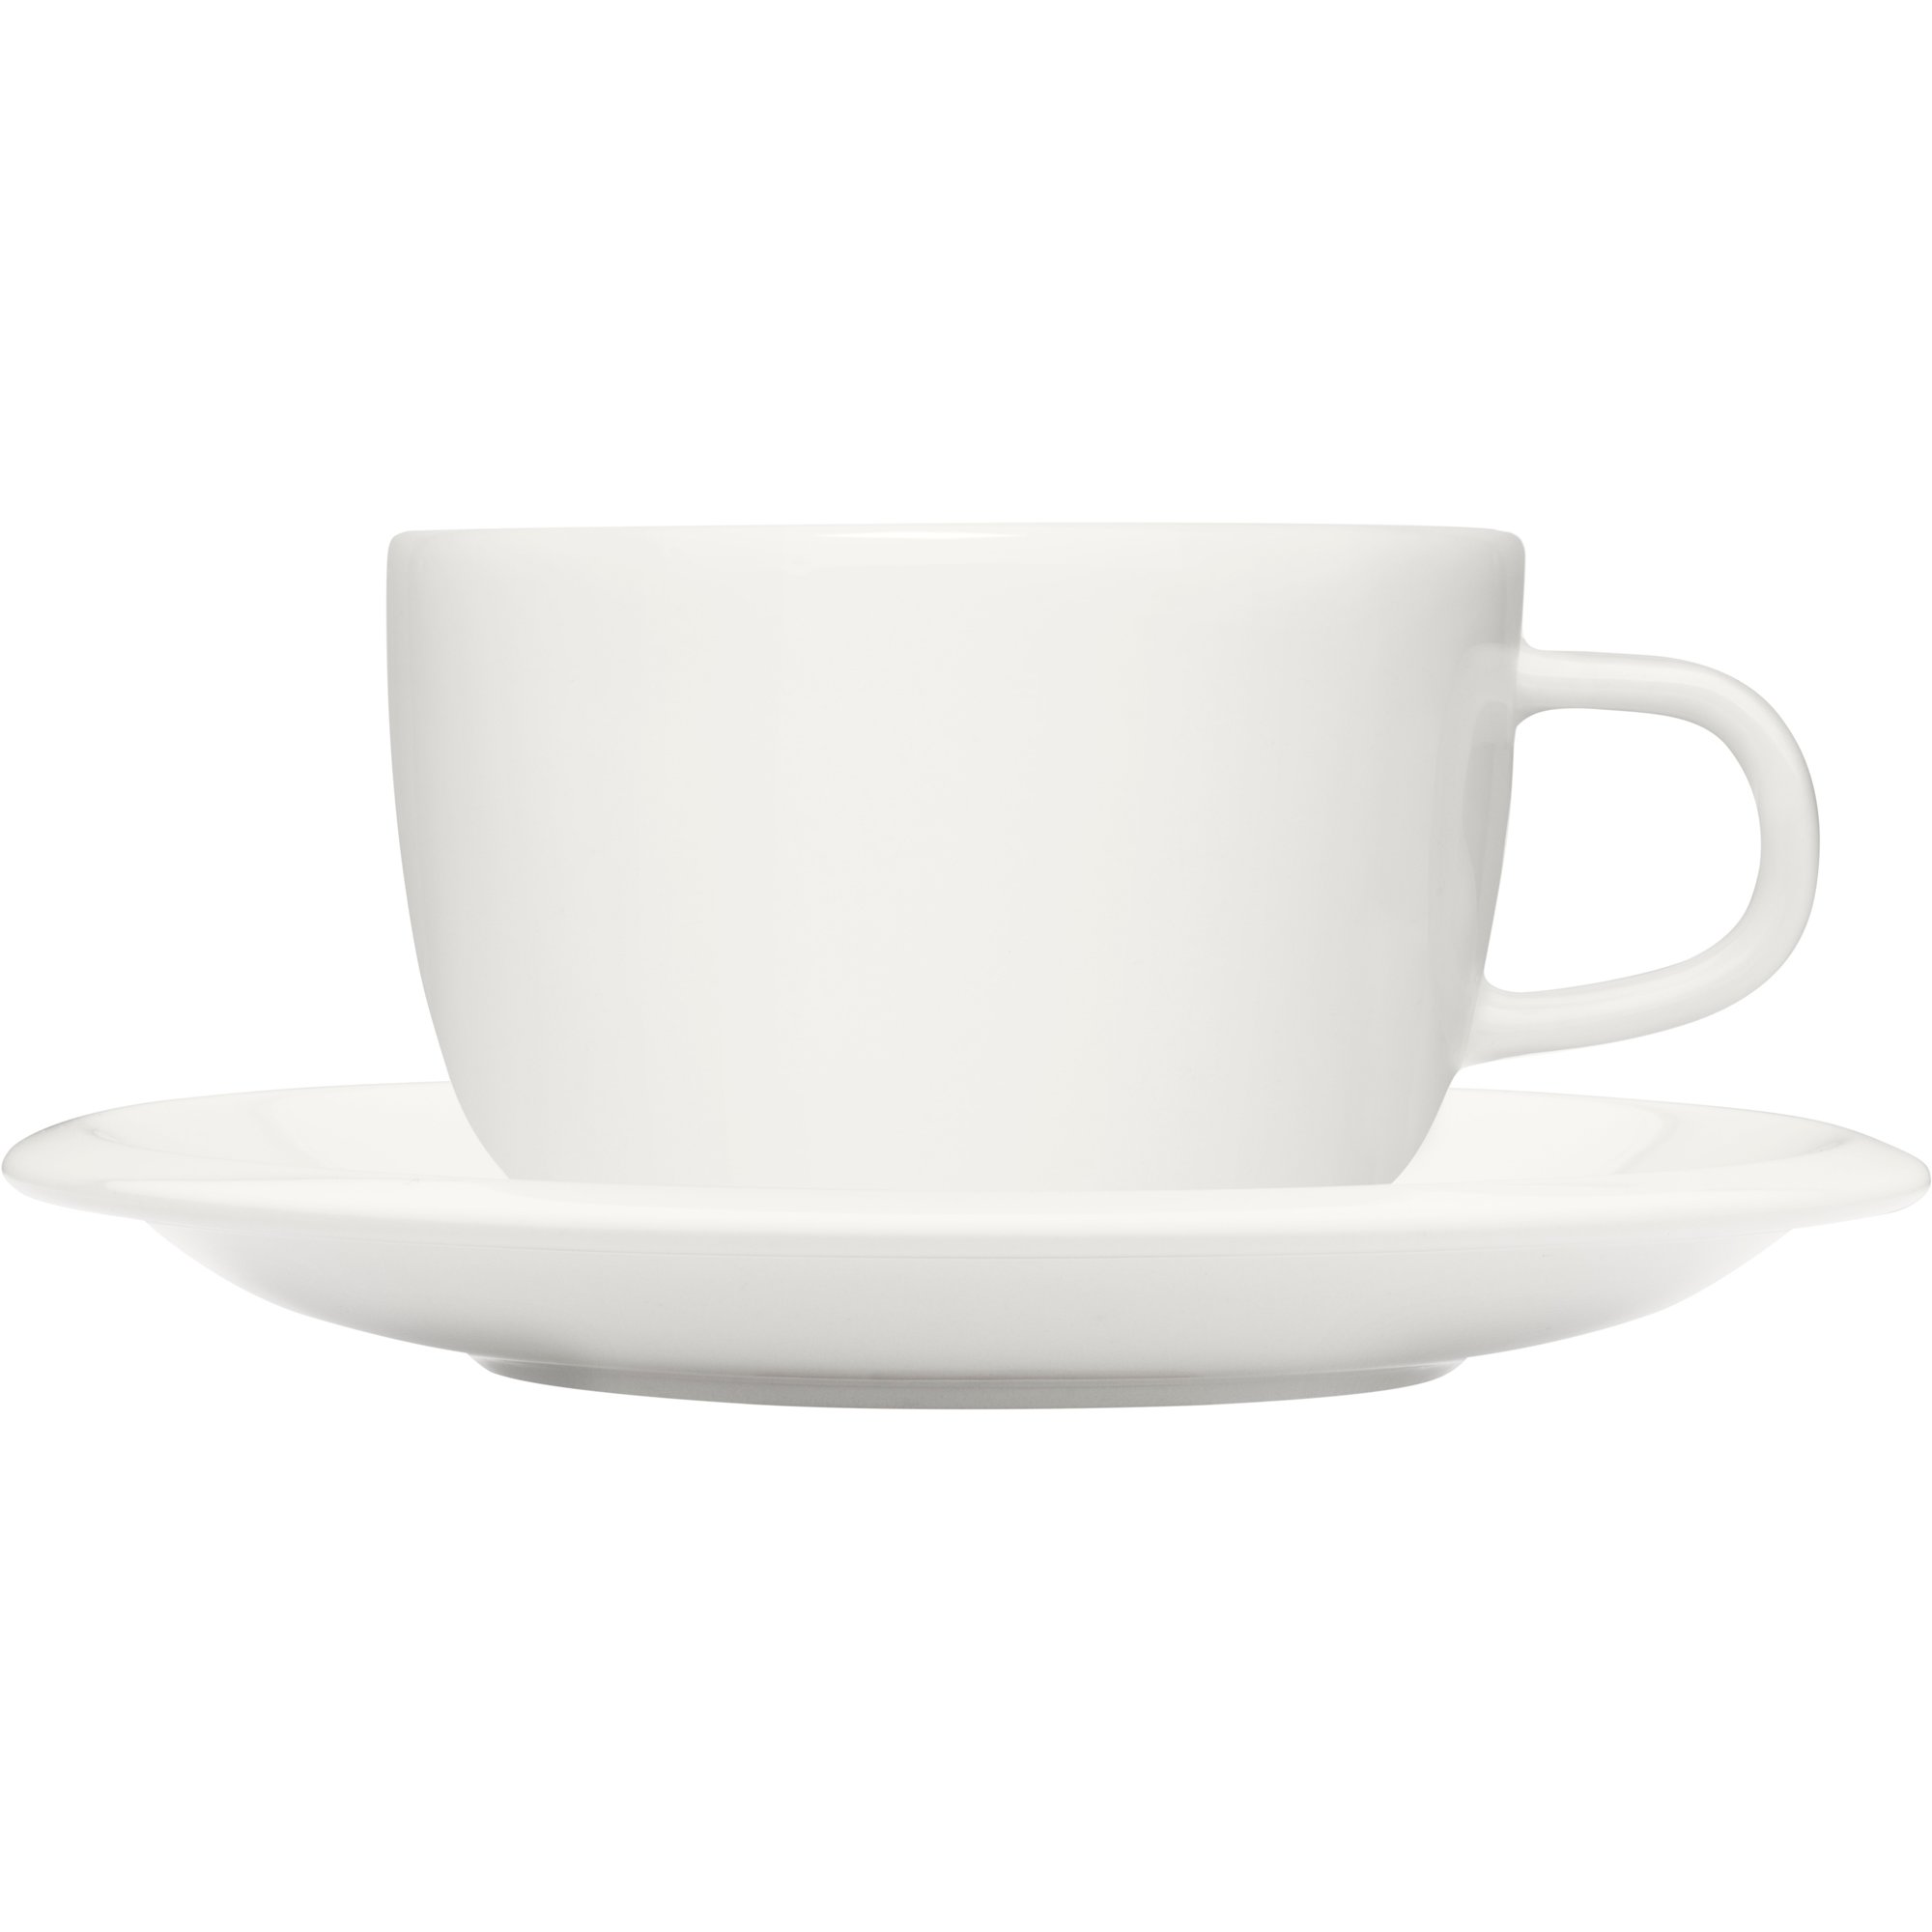 6: Iittala Raami kaffekop med fad, hvid